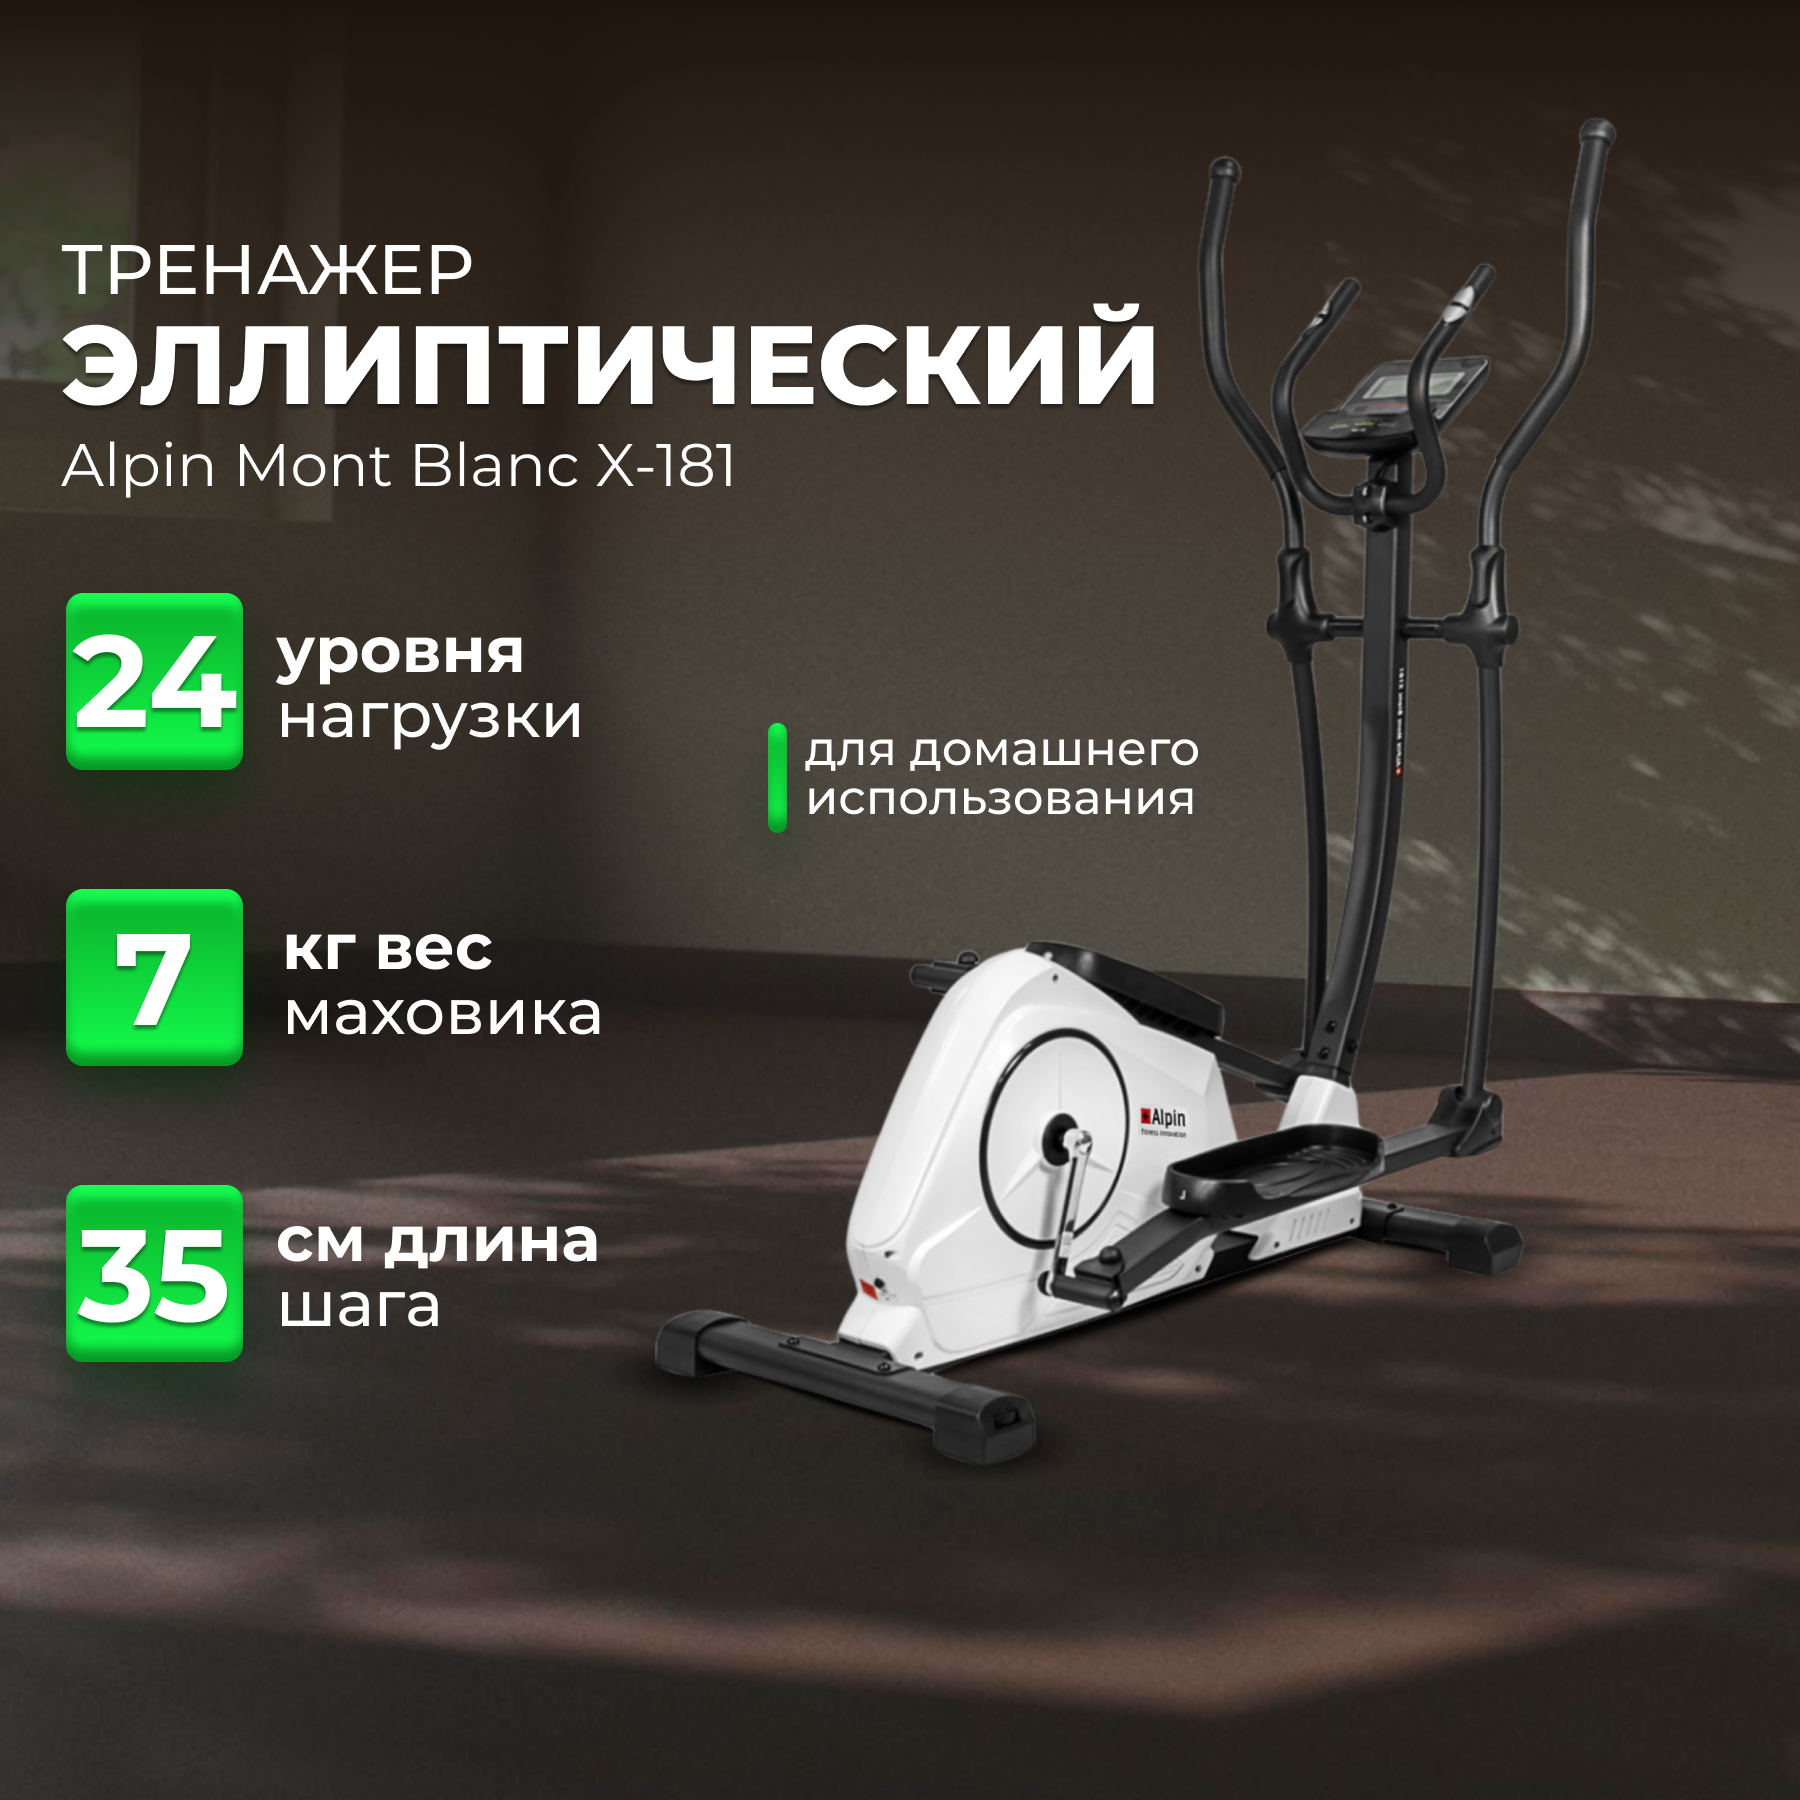 Эллиптический тренажер для фитнеса и похудения Alpin Mont Blanc X-181, вес маховика 7 кг, питание от сети 220Вт